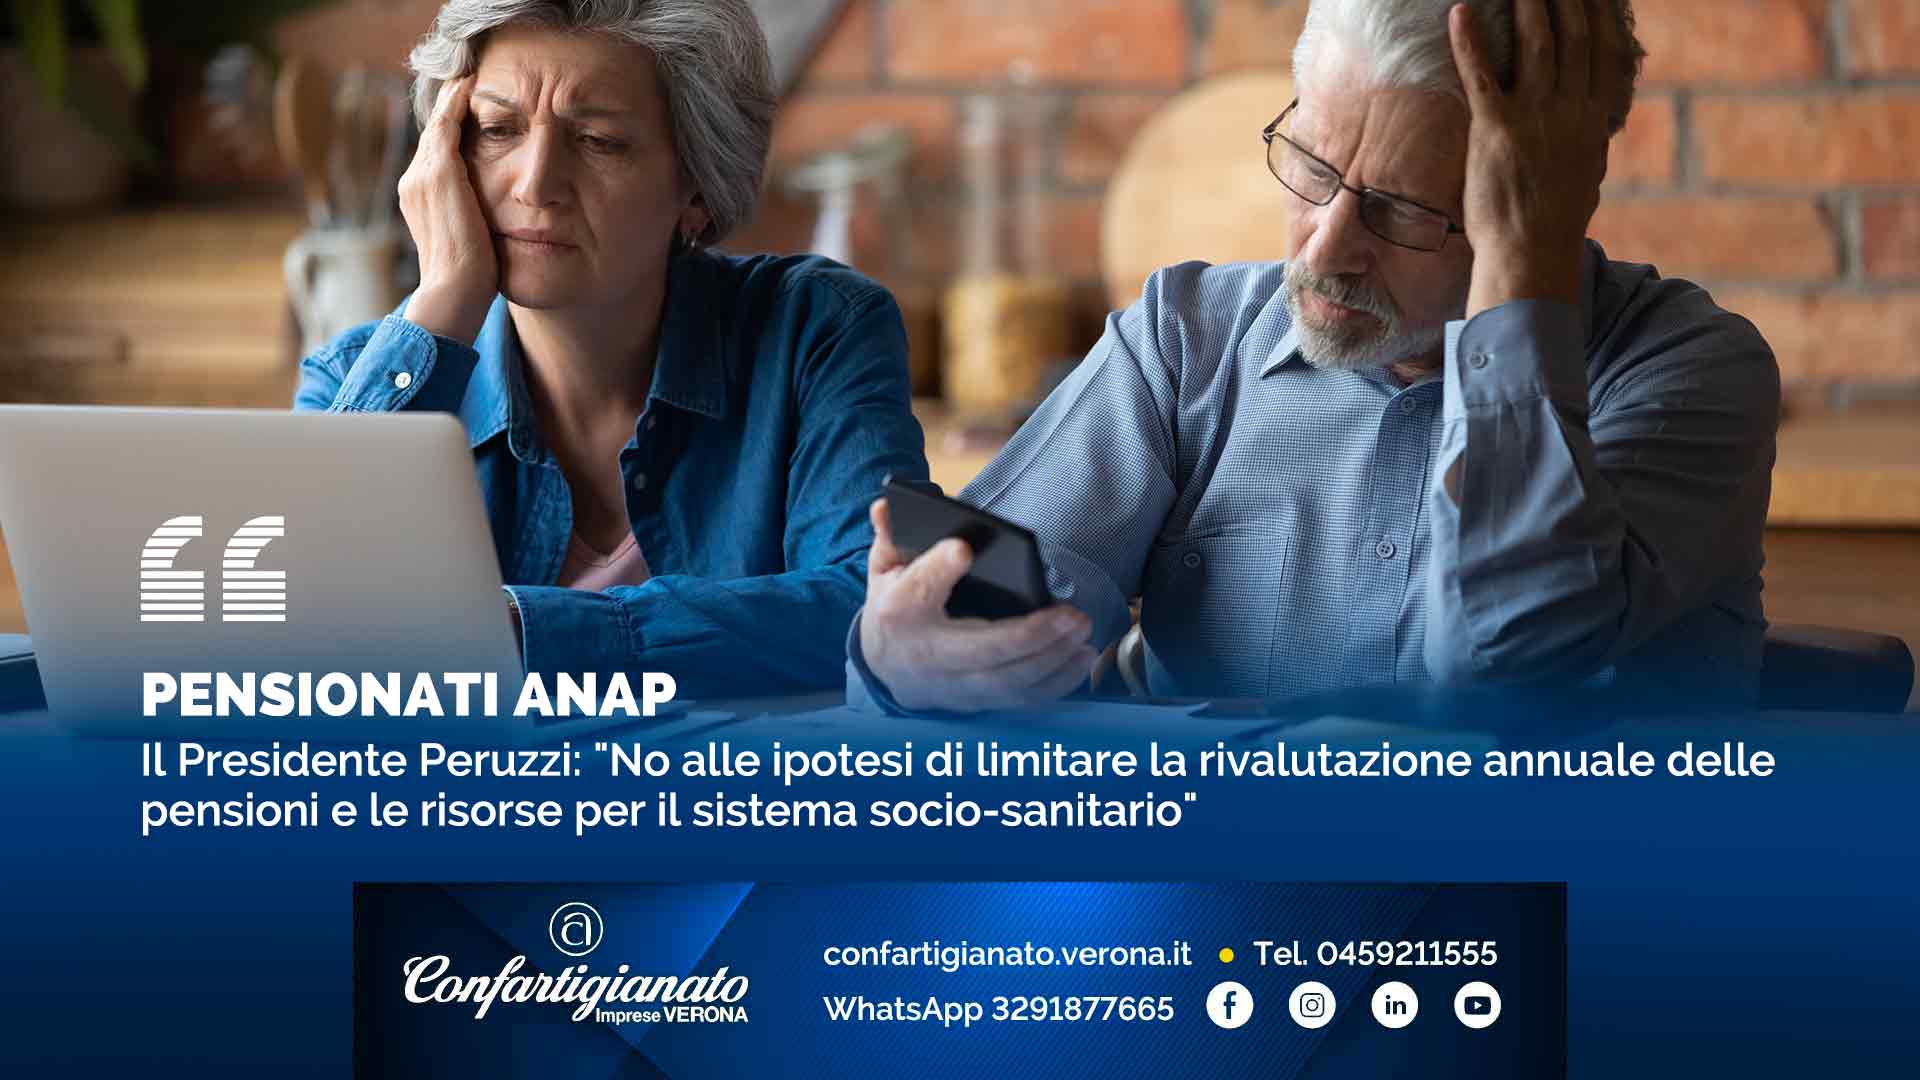 PENSIONATI ANAP – Il Presidente Peruzzi: "No alle ipotesi di limitare la rivalutazione annuale delle pensioni e le risorse per il sistema socio-sanitario"